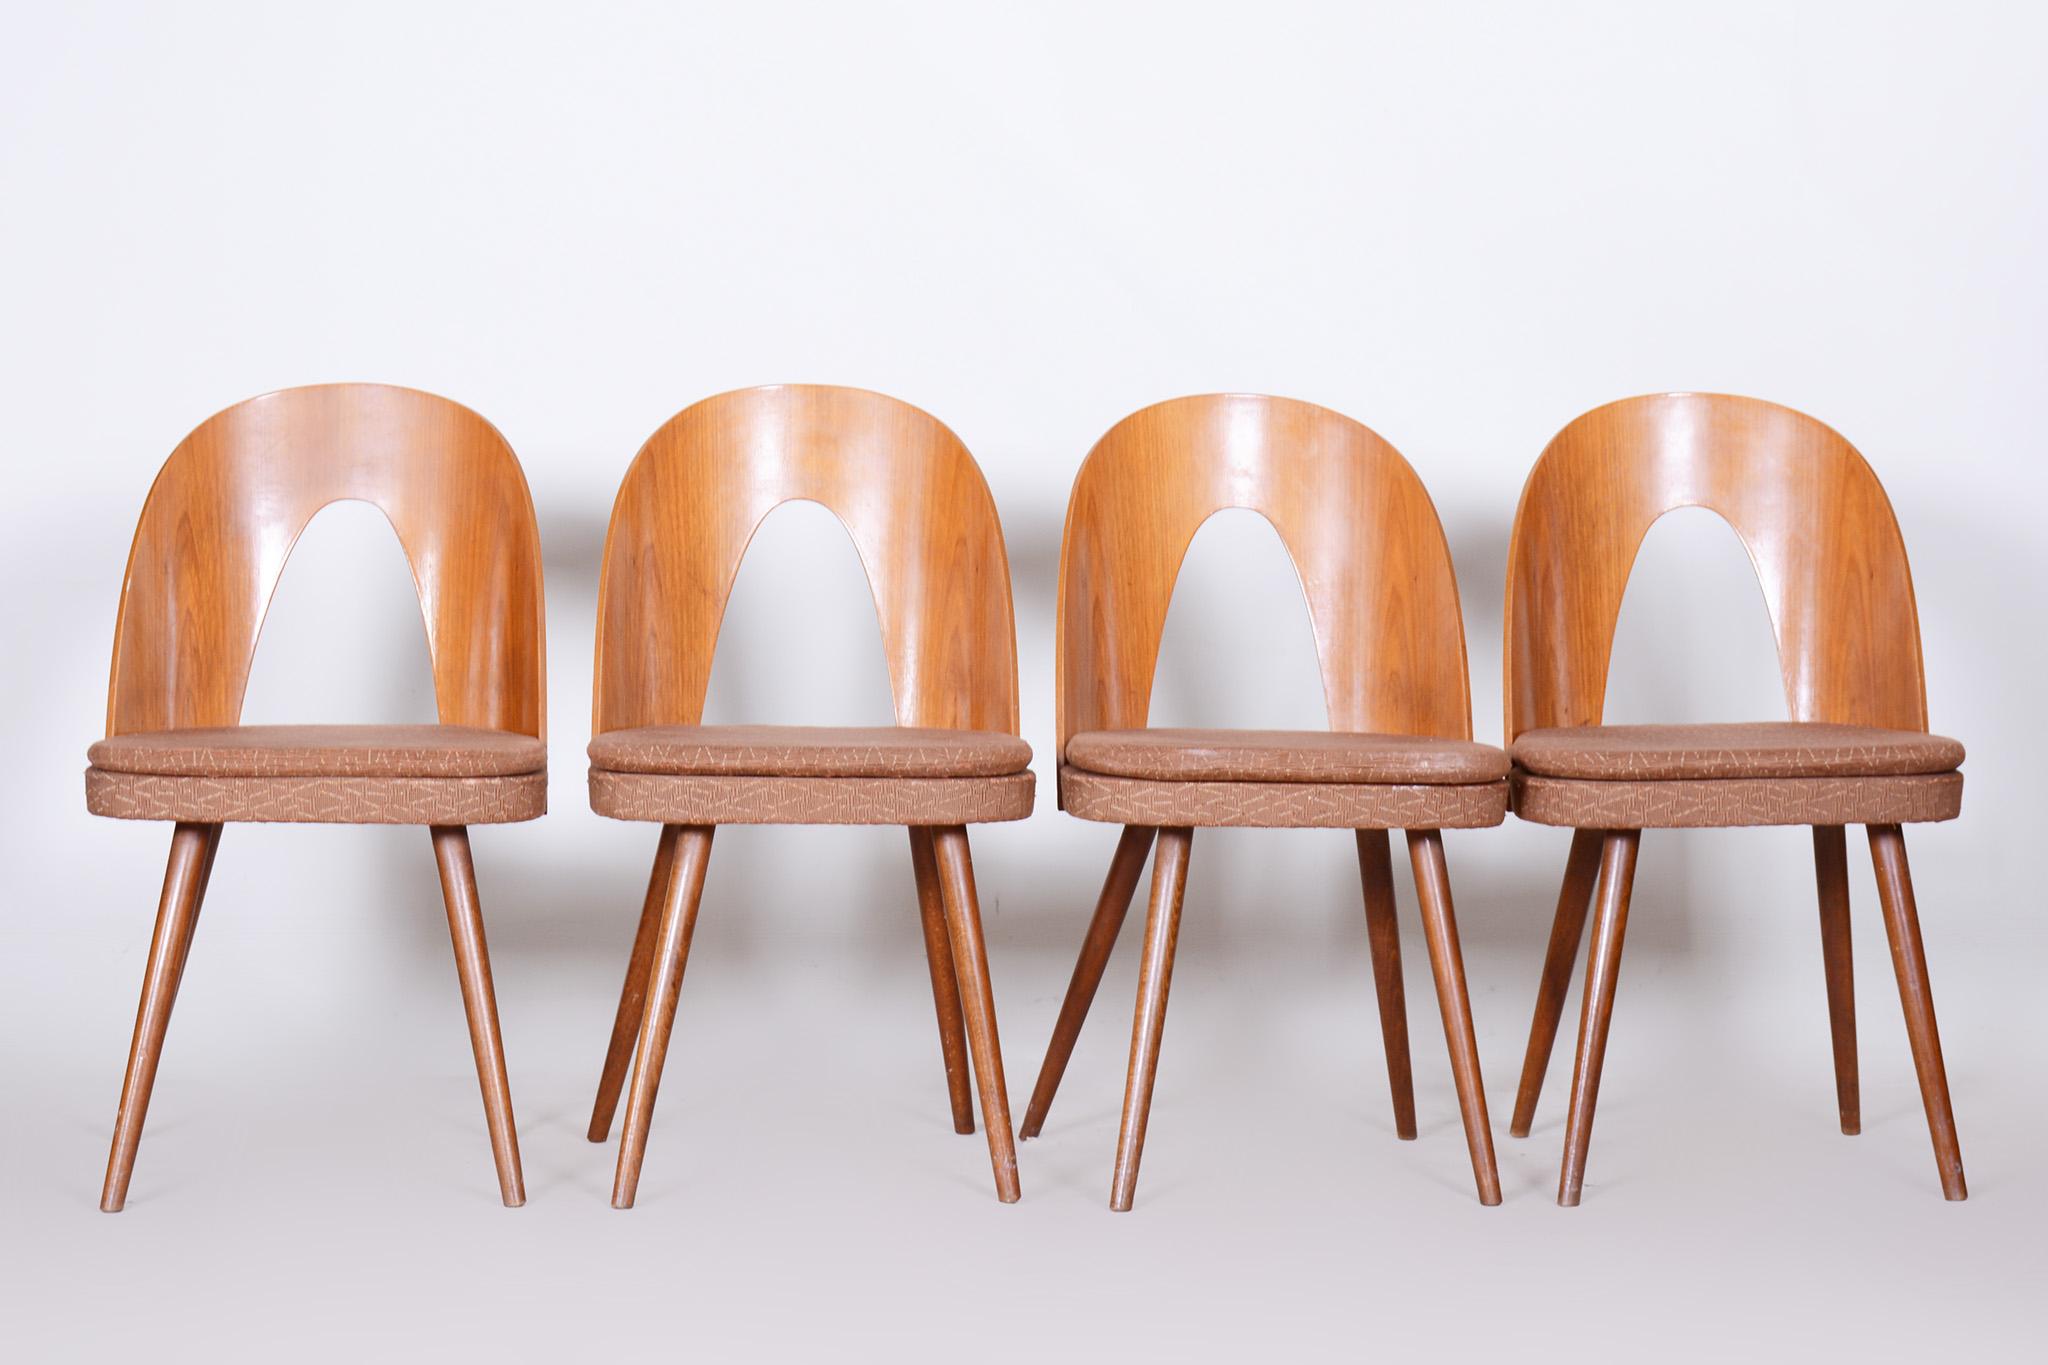 Ensemble de quatre chaises modernes du milieu du siècle dernier, fabriquées dans les années 1950 en République tchèque par Antonín Šuman

En parfait état d'origine, la tapisserie a été nettoyée professionnellement et son polissage a été ravivé par